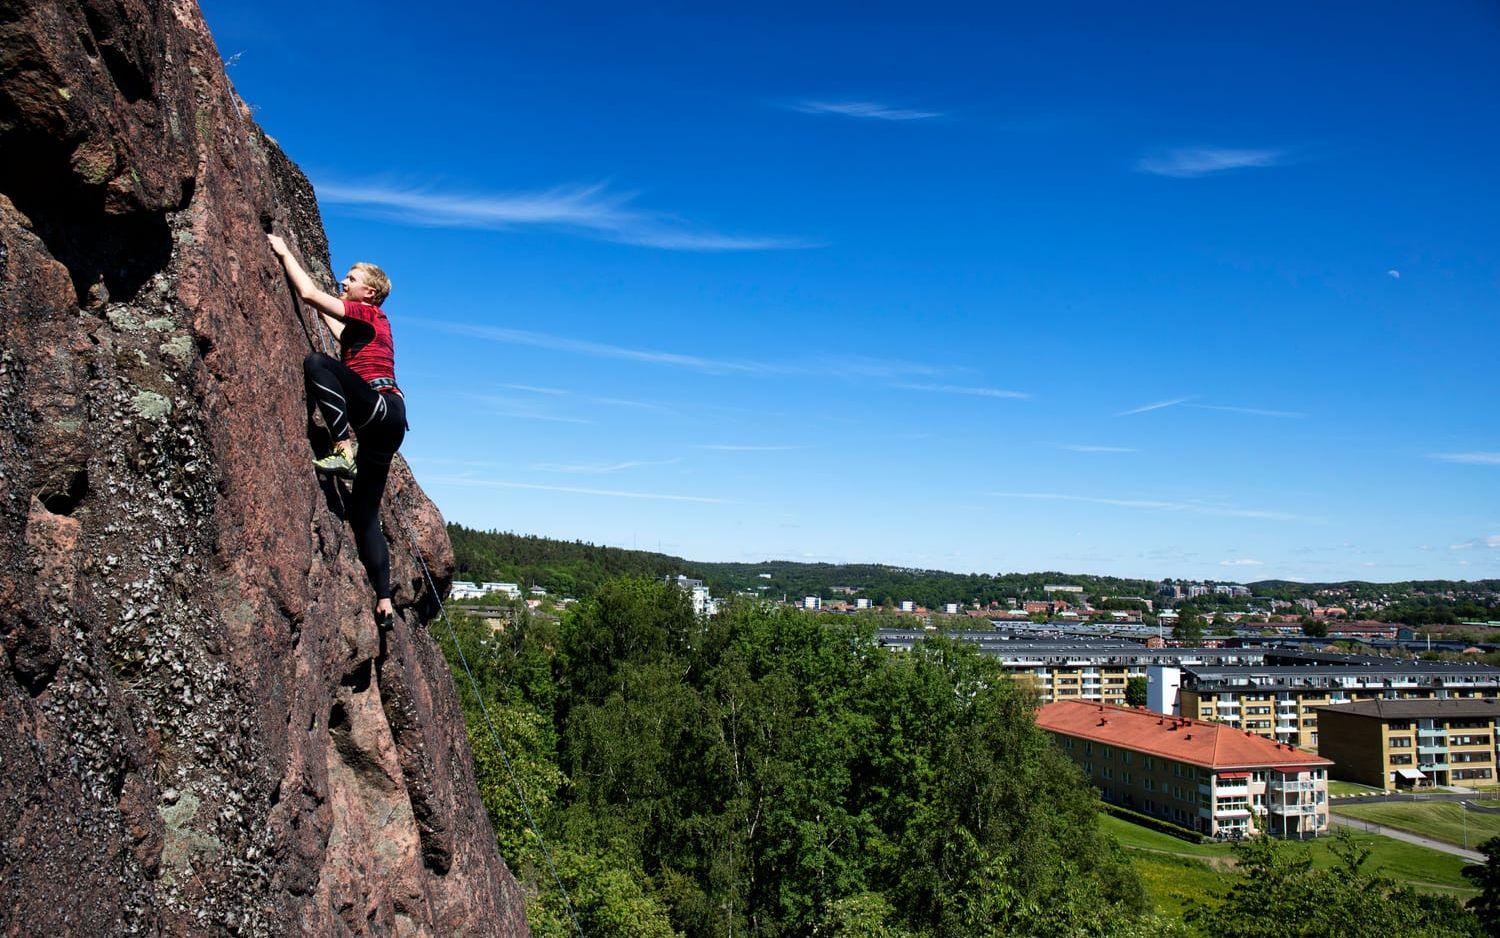 Puls-skribenten Magnus Carlsson tog mod till sig, gjorde en rejäl kraftansträngning och klättrade (under överinseende av kunniga klättrare) upp för den 30 meter höga klippan i Eklanda. Bild: Nicklas Elmrin